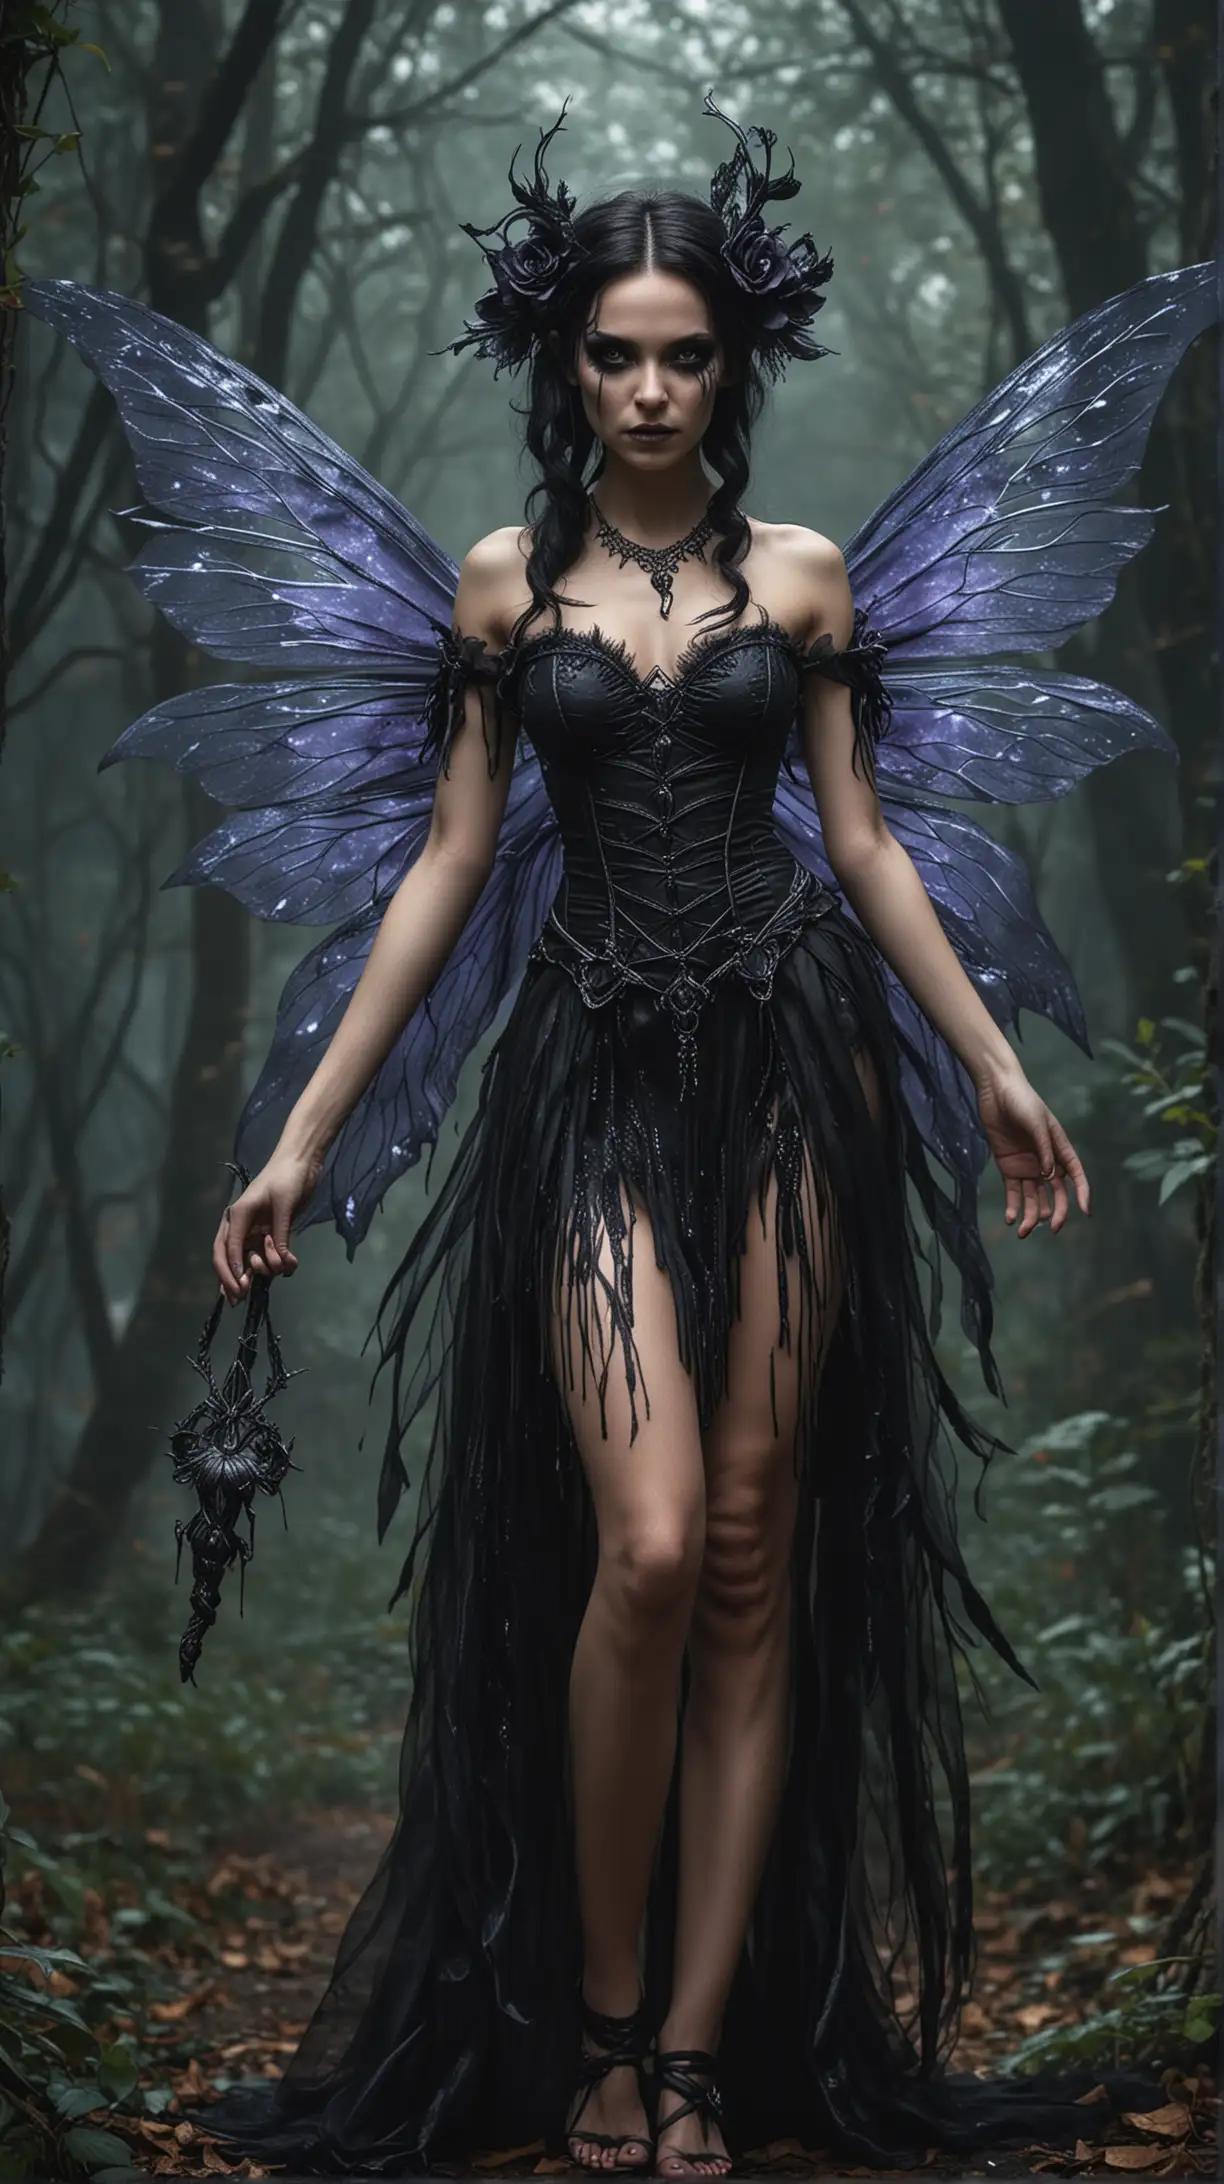 Malevolent Dark Feywild Fairy with Sinister Gaze